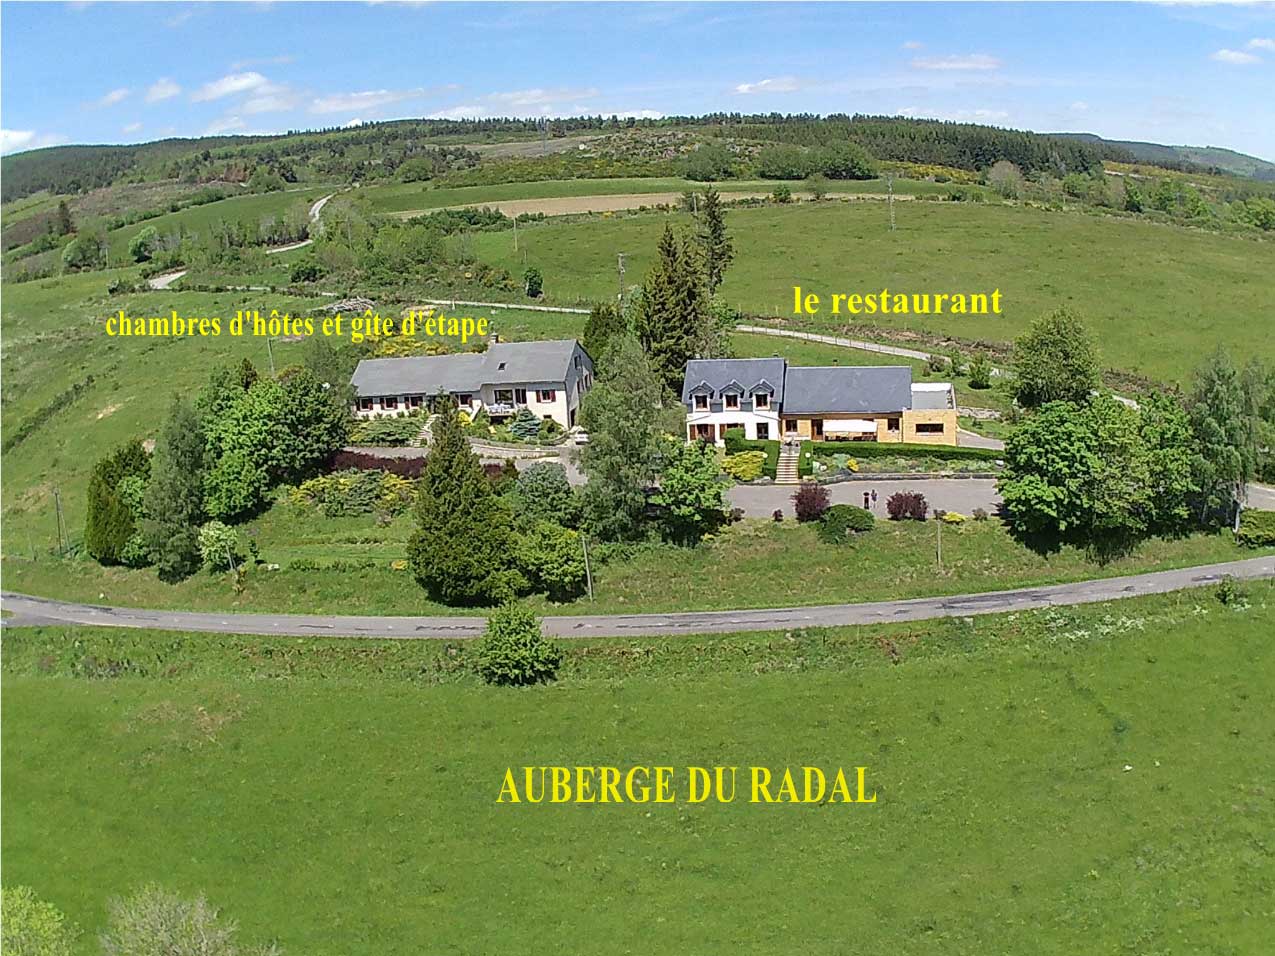 Auberge du Radal